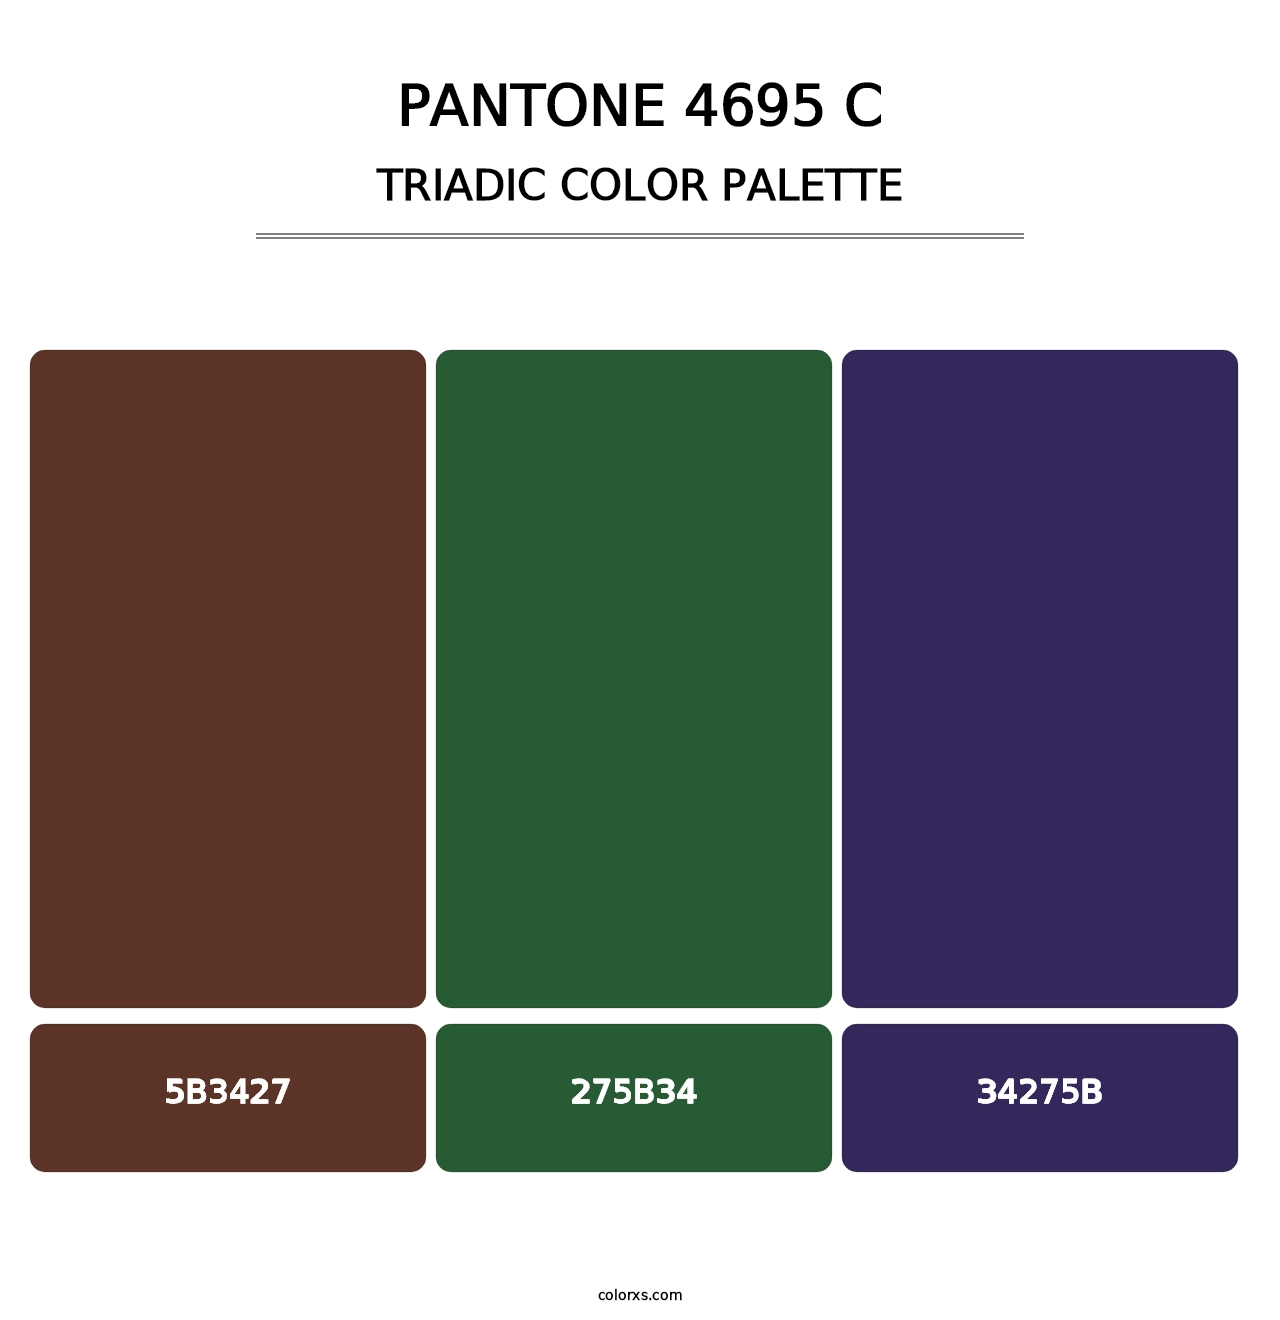 PANTONE 4695 C - Triadic Color Palette